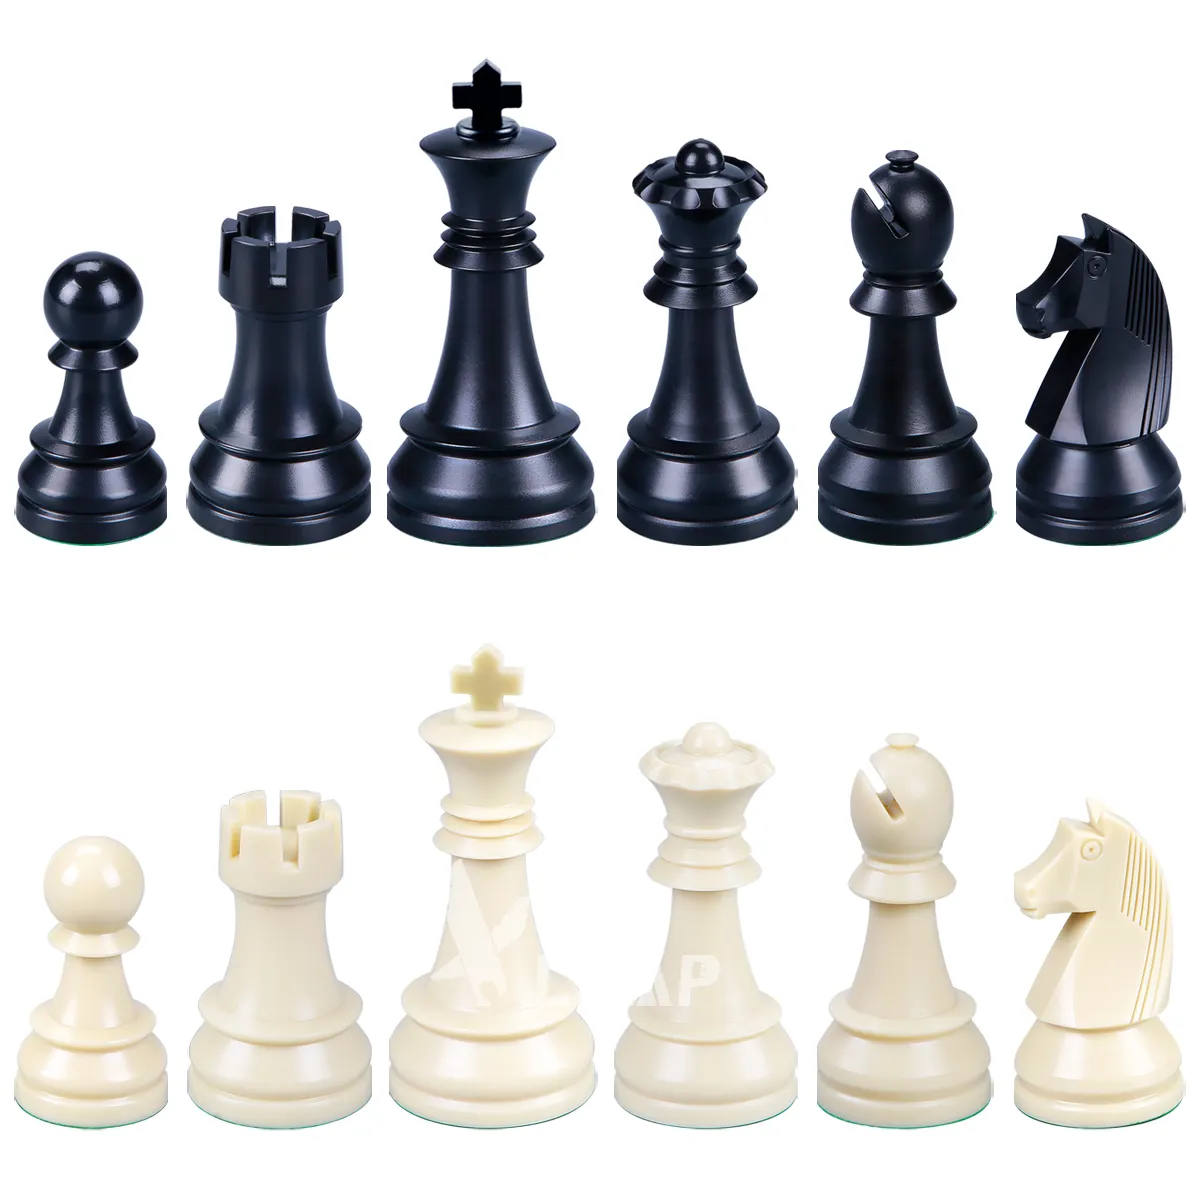 OEM टूर्नामेंट क्लब शतरंज टुकड़ा ठोस ABS सामग्री 3.75 इंच 9.7cm 34 शतरंज टुकड़े सेट डे ajedrez शतरंज टुकड़ा निर्माताओं